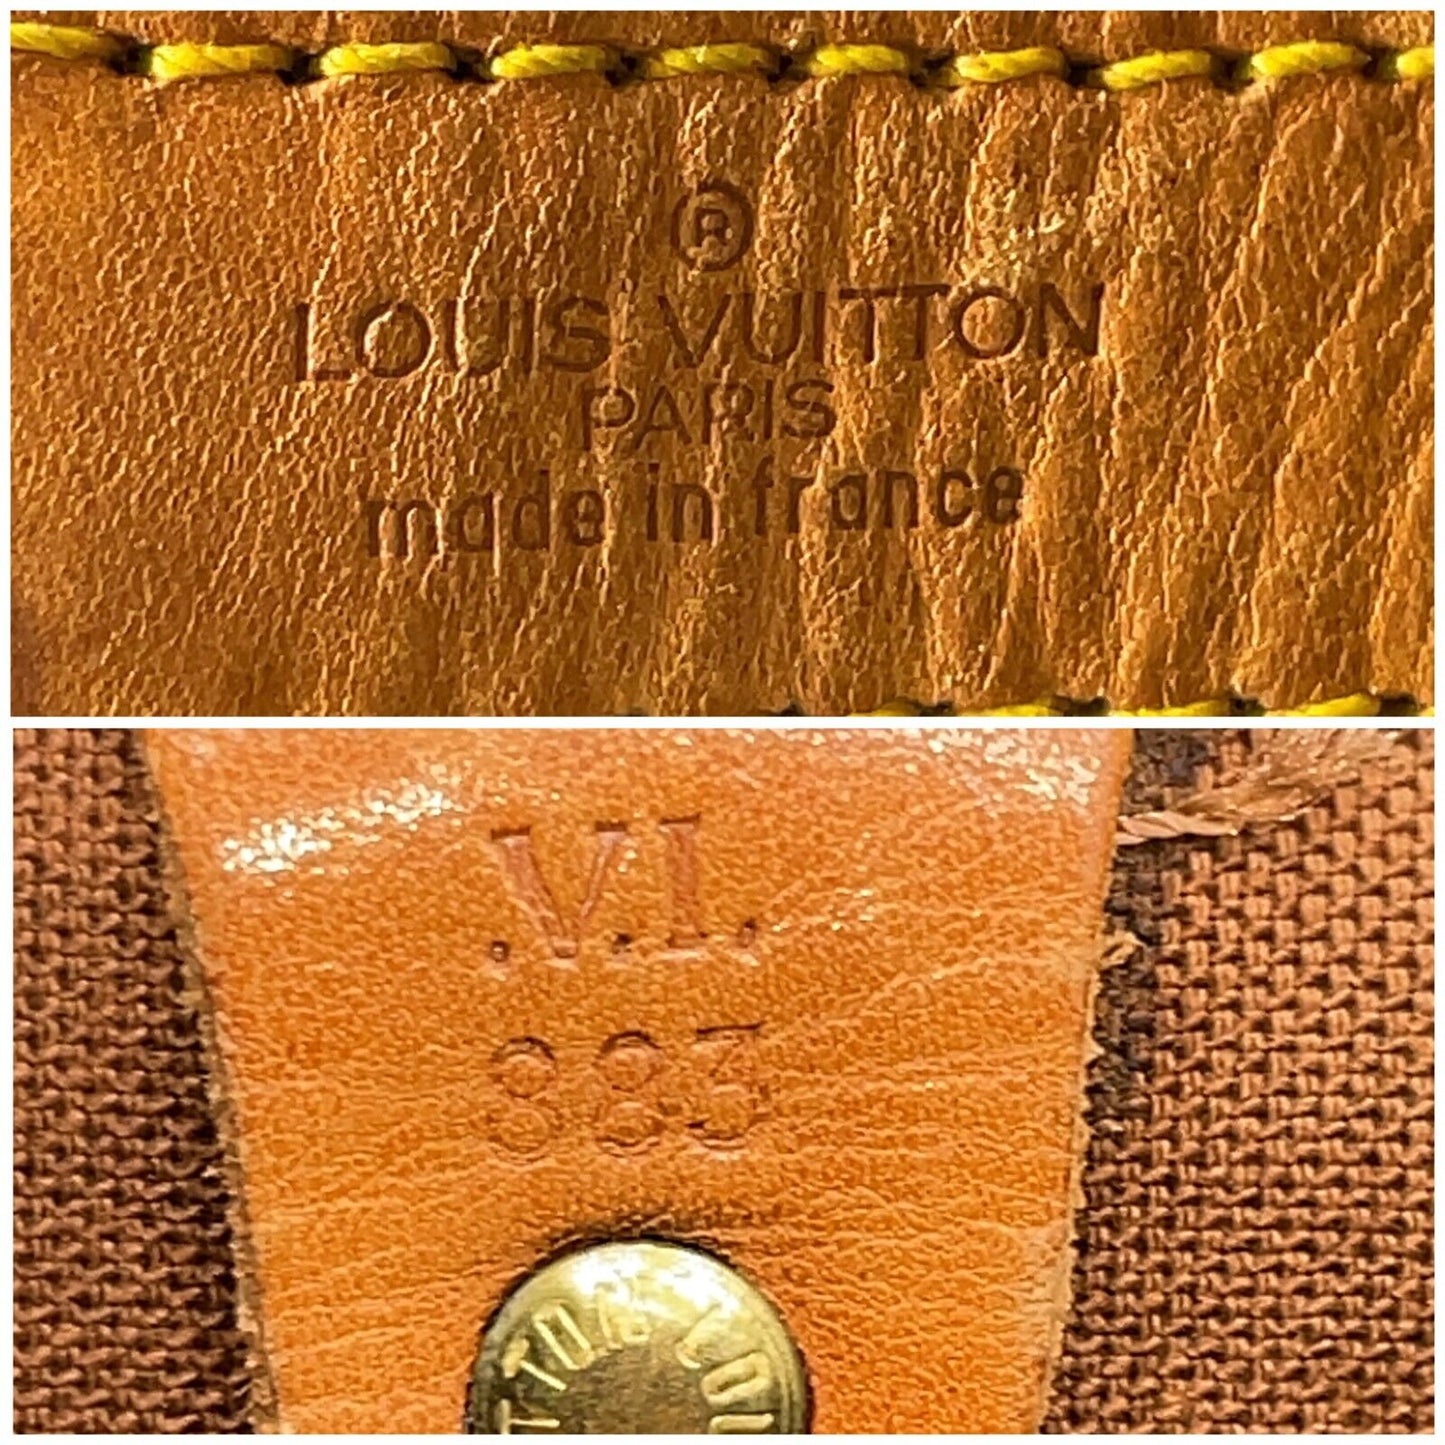 Original/Auth Louis Vuitton - Keepall Bandouliere 60 - Klassisch - Monogramm